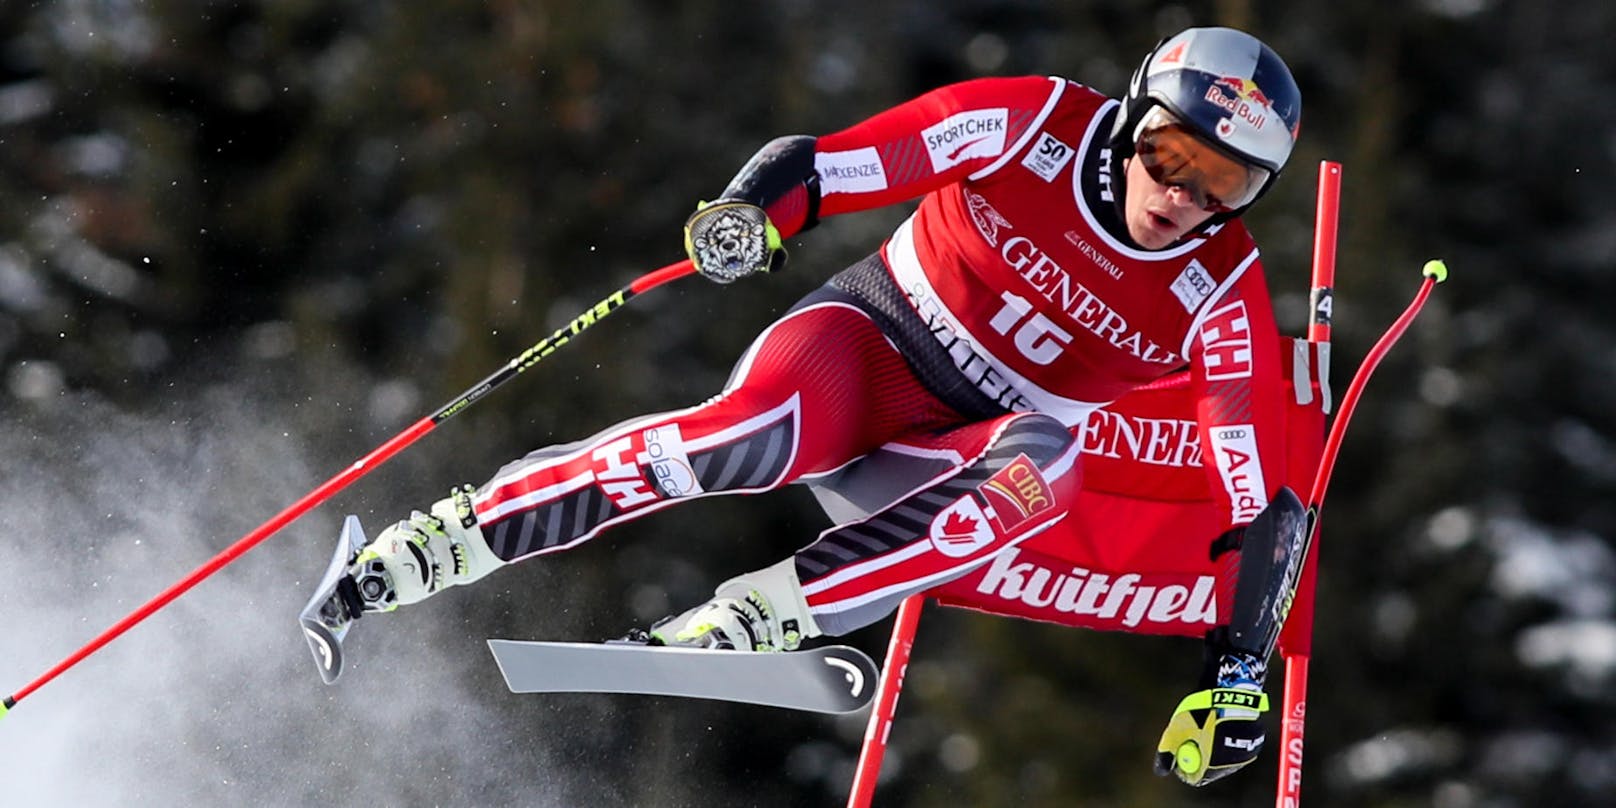 Für eine Überraschung sorgte Erik Guay. Der Kanadier erklärte spontan seinen Rücktritt, weil am Vortag sein Landsmann Manuel Osborne-Paradis schwer stürzte. Mit Guay, der vier Töchter hat, verließ der amtierende Super-G-Weltmeister die Ski-Bühne.